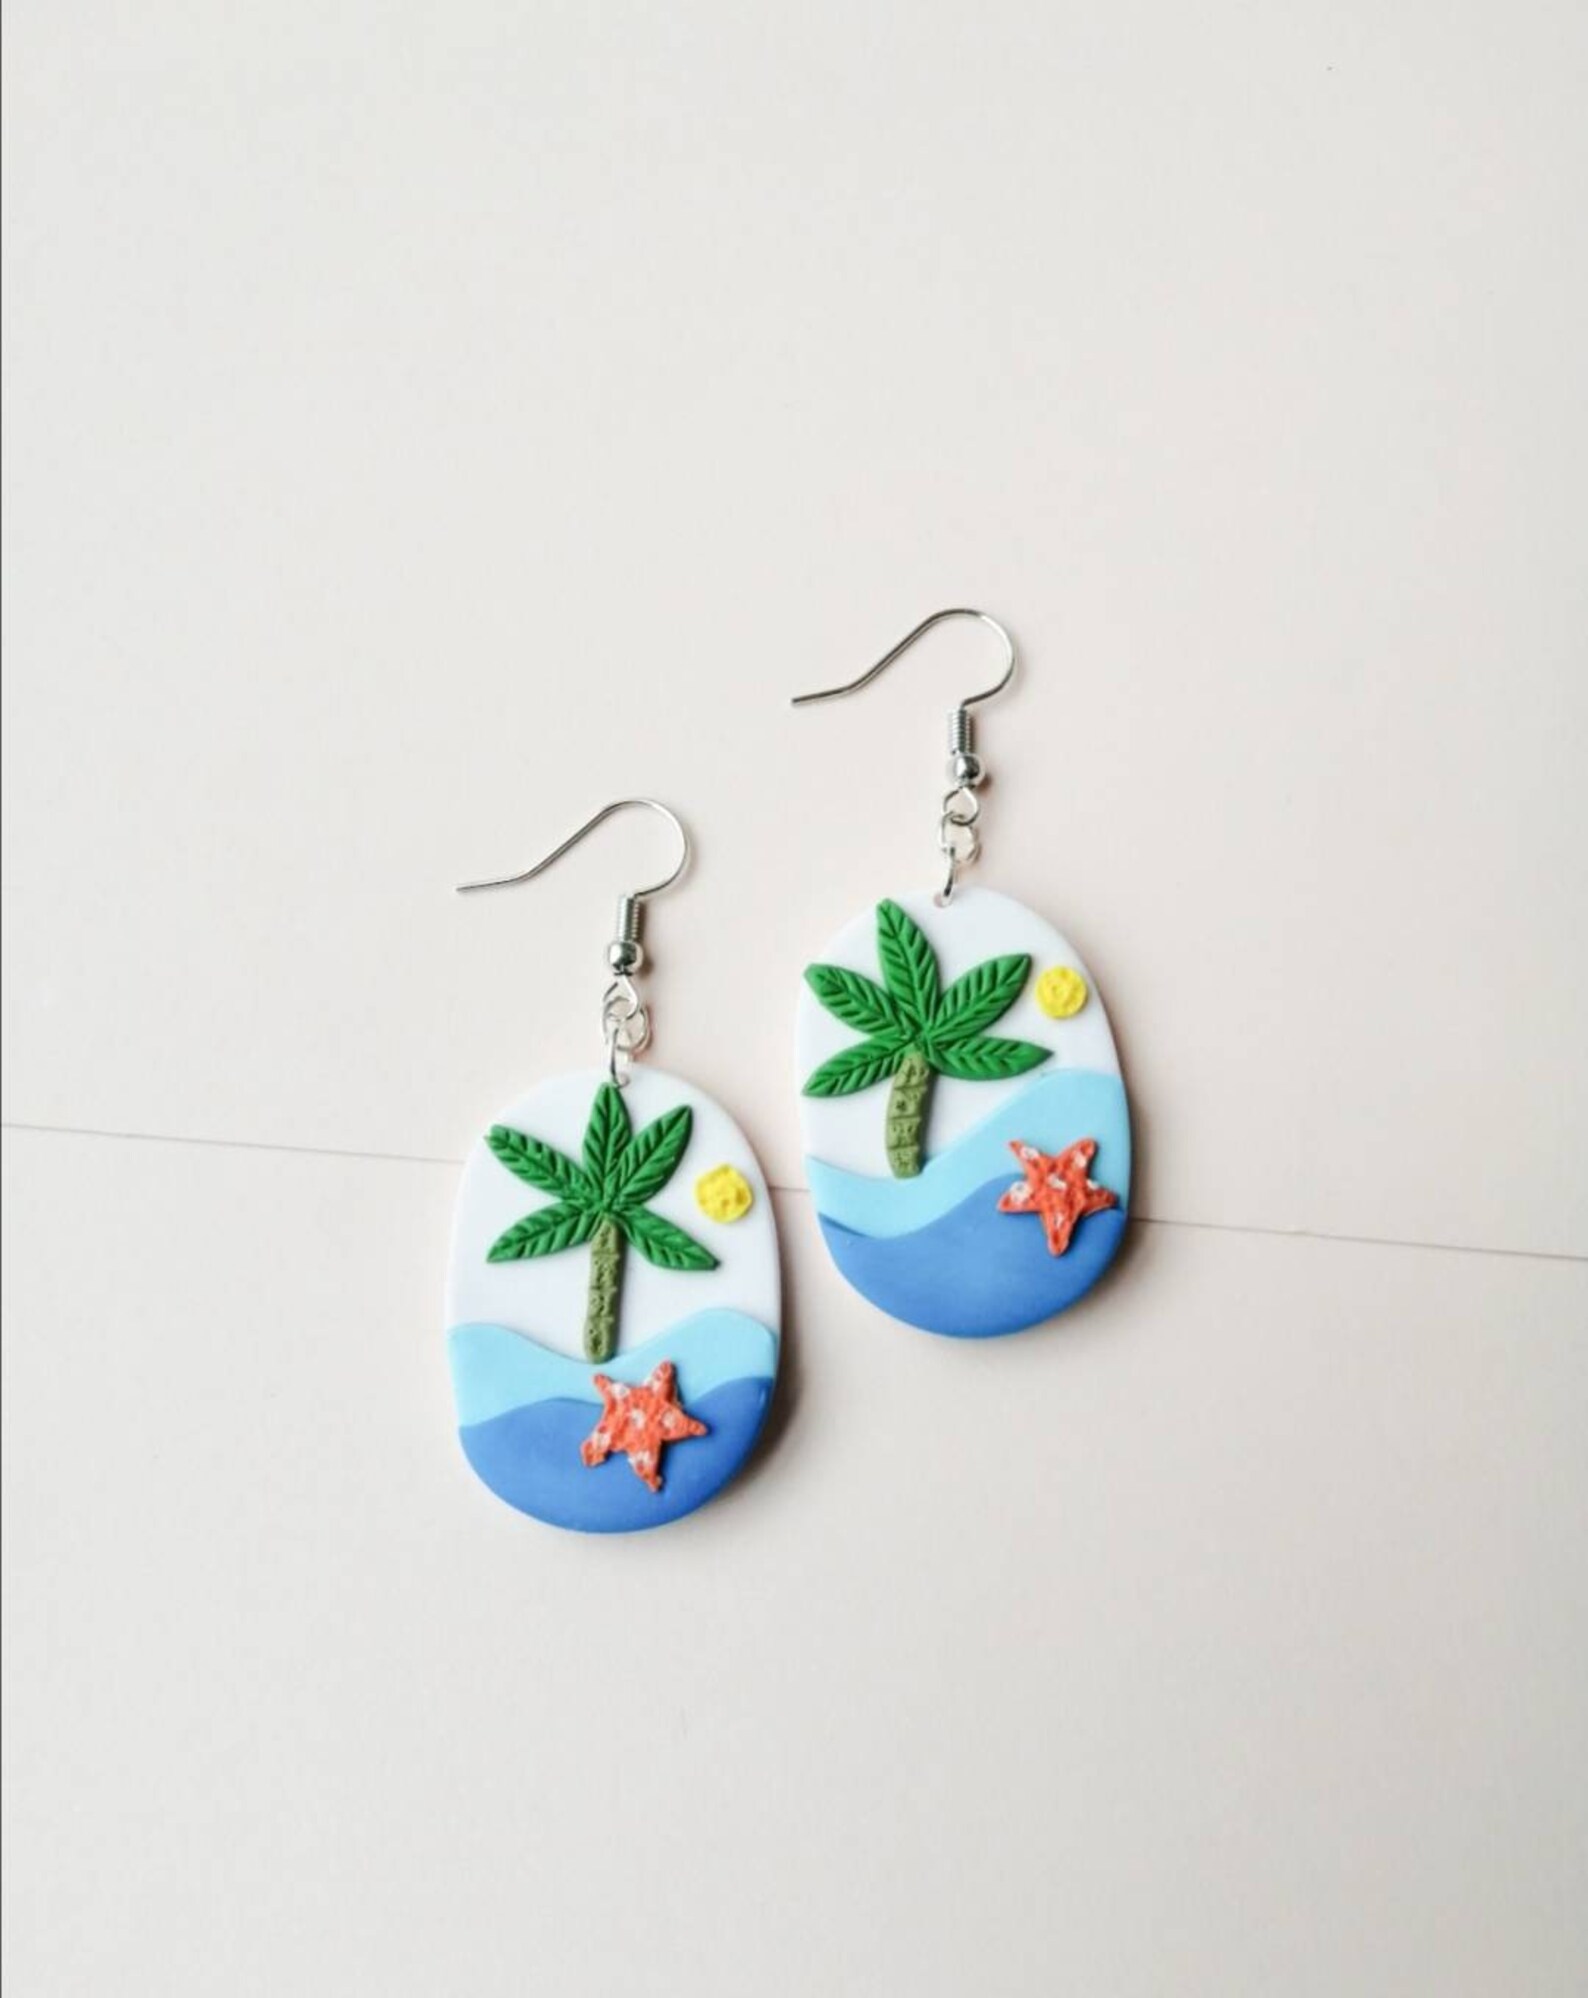 Tropical Summer earrings/dangle earrings/clay earrings/palm | Etsy